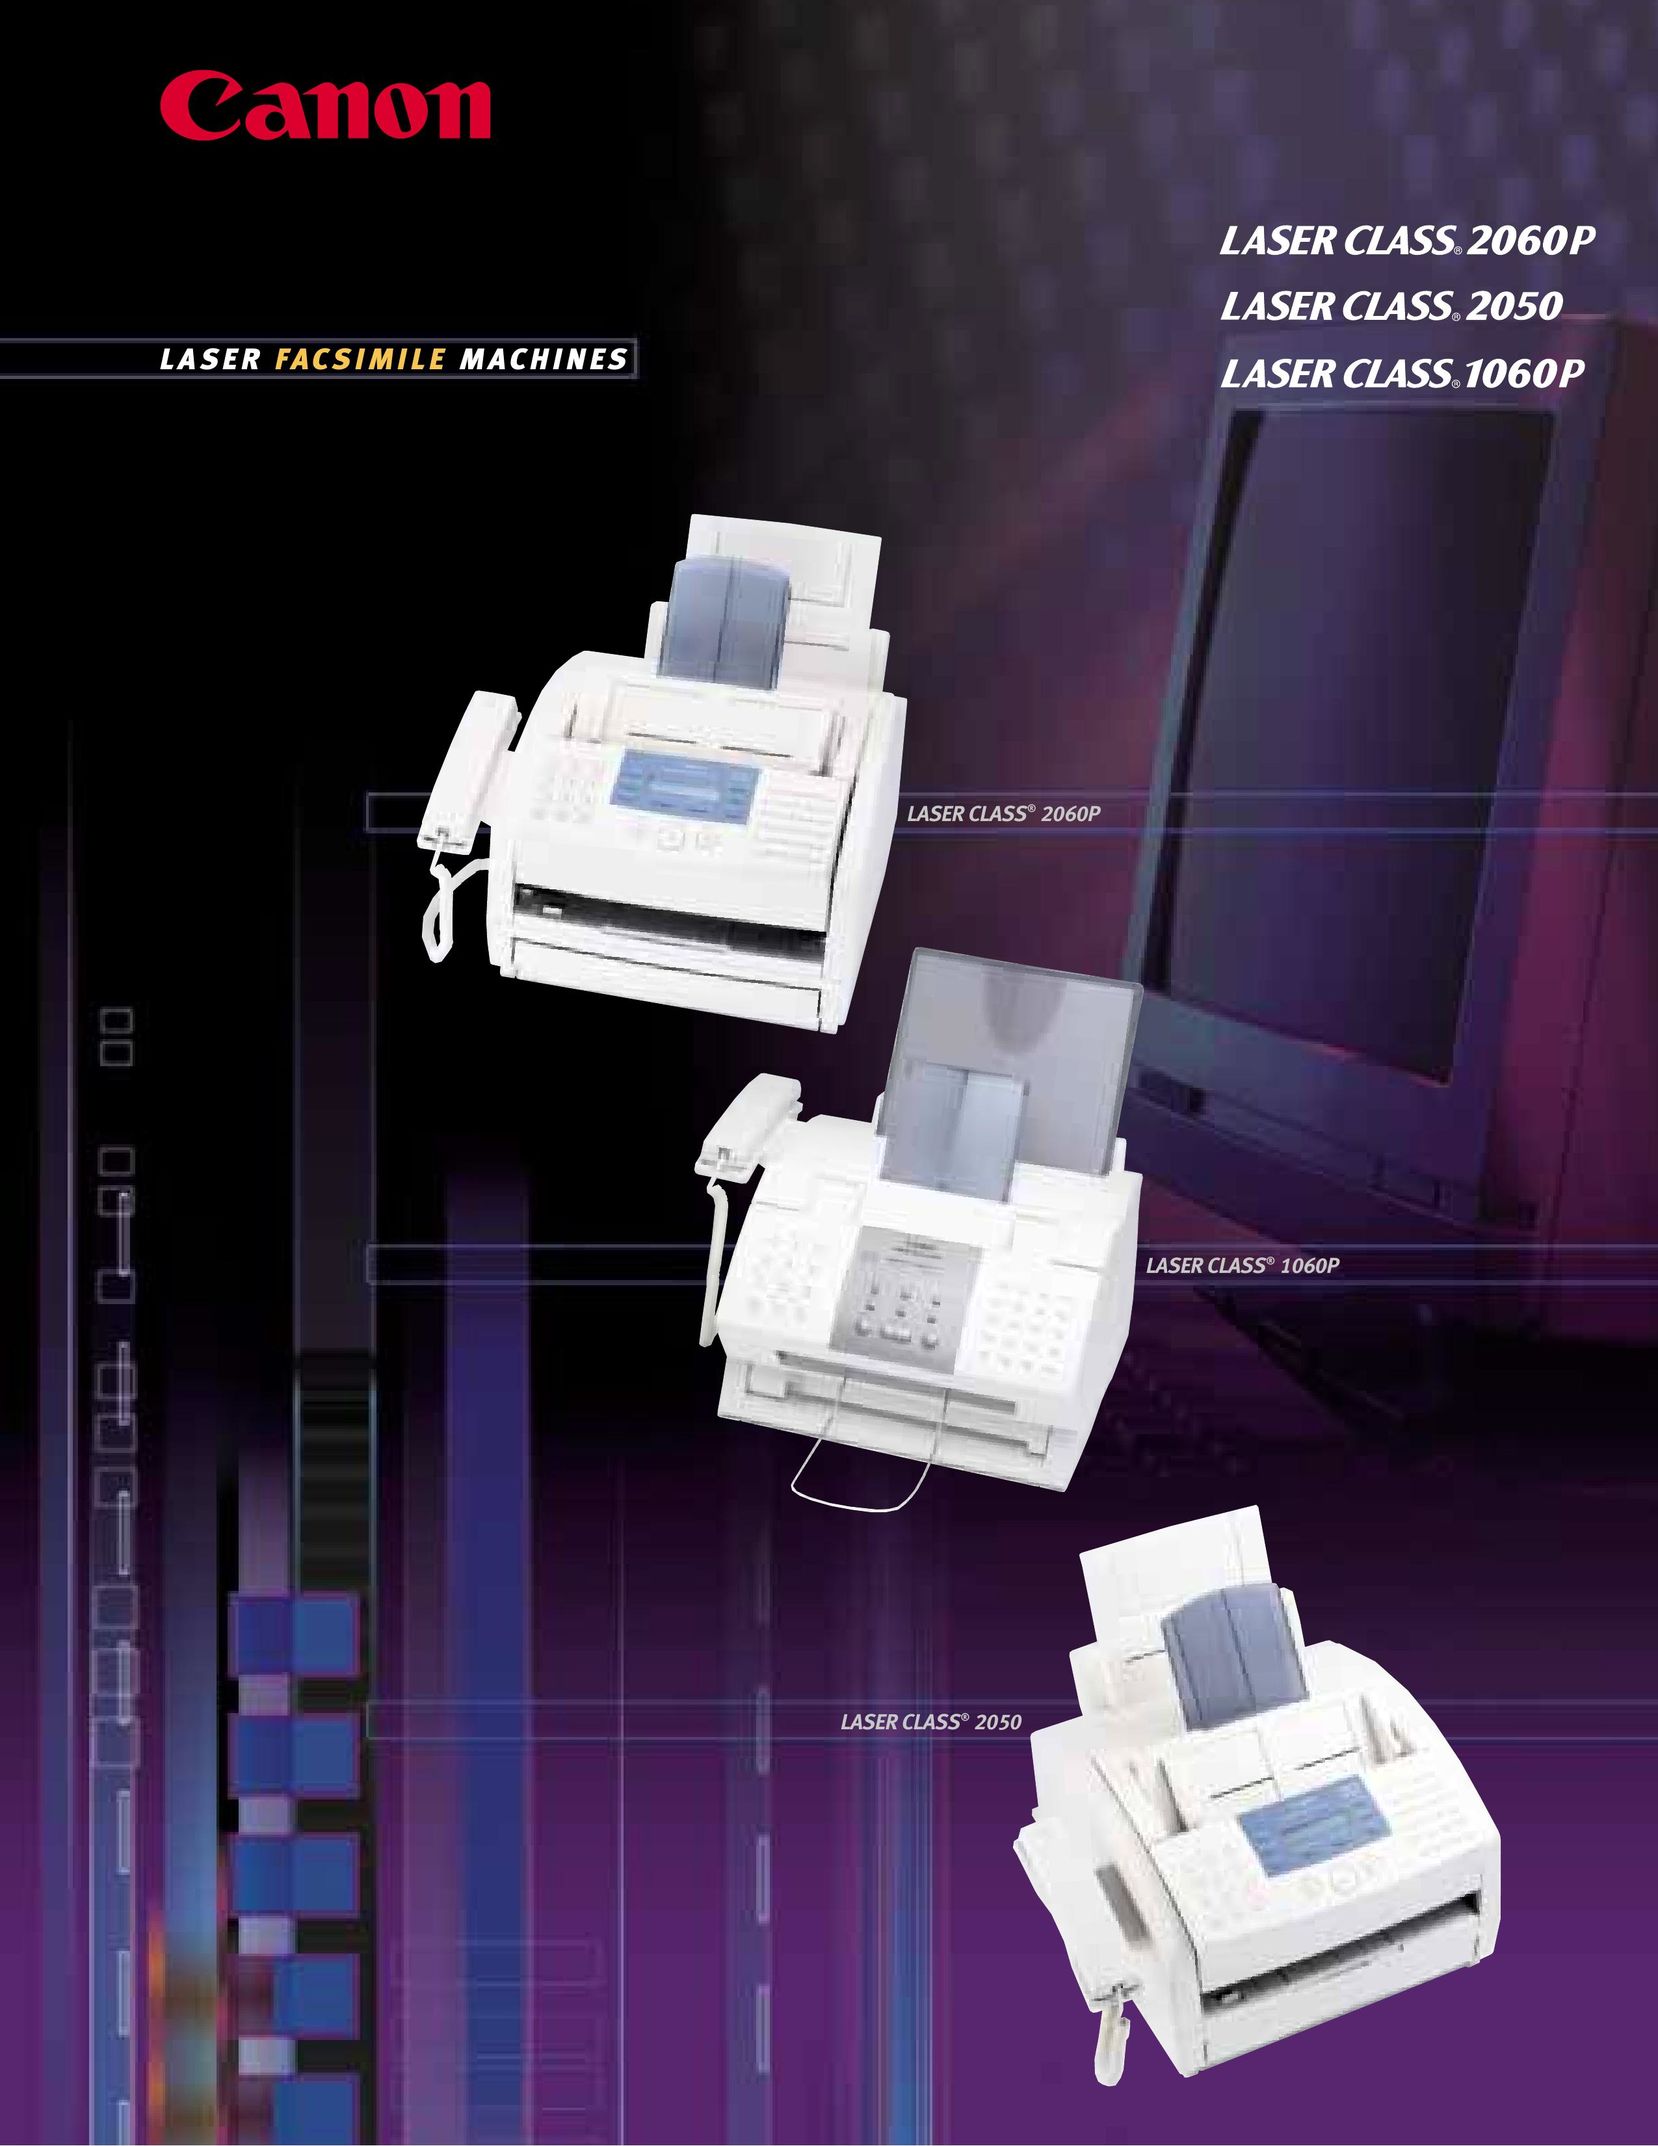 Canon 2060P Fax Machine User Manual